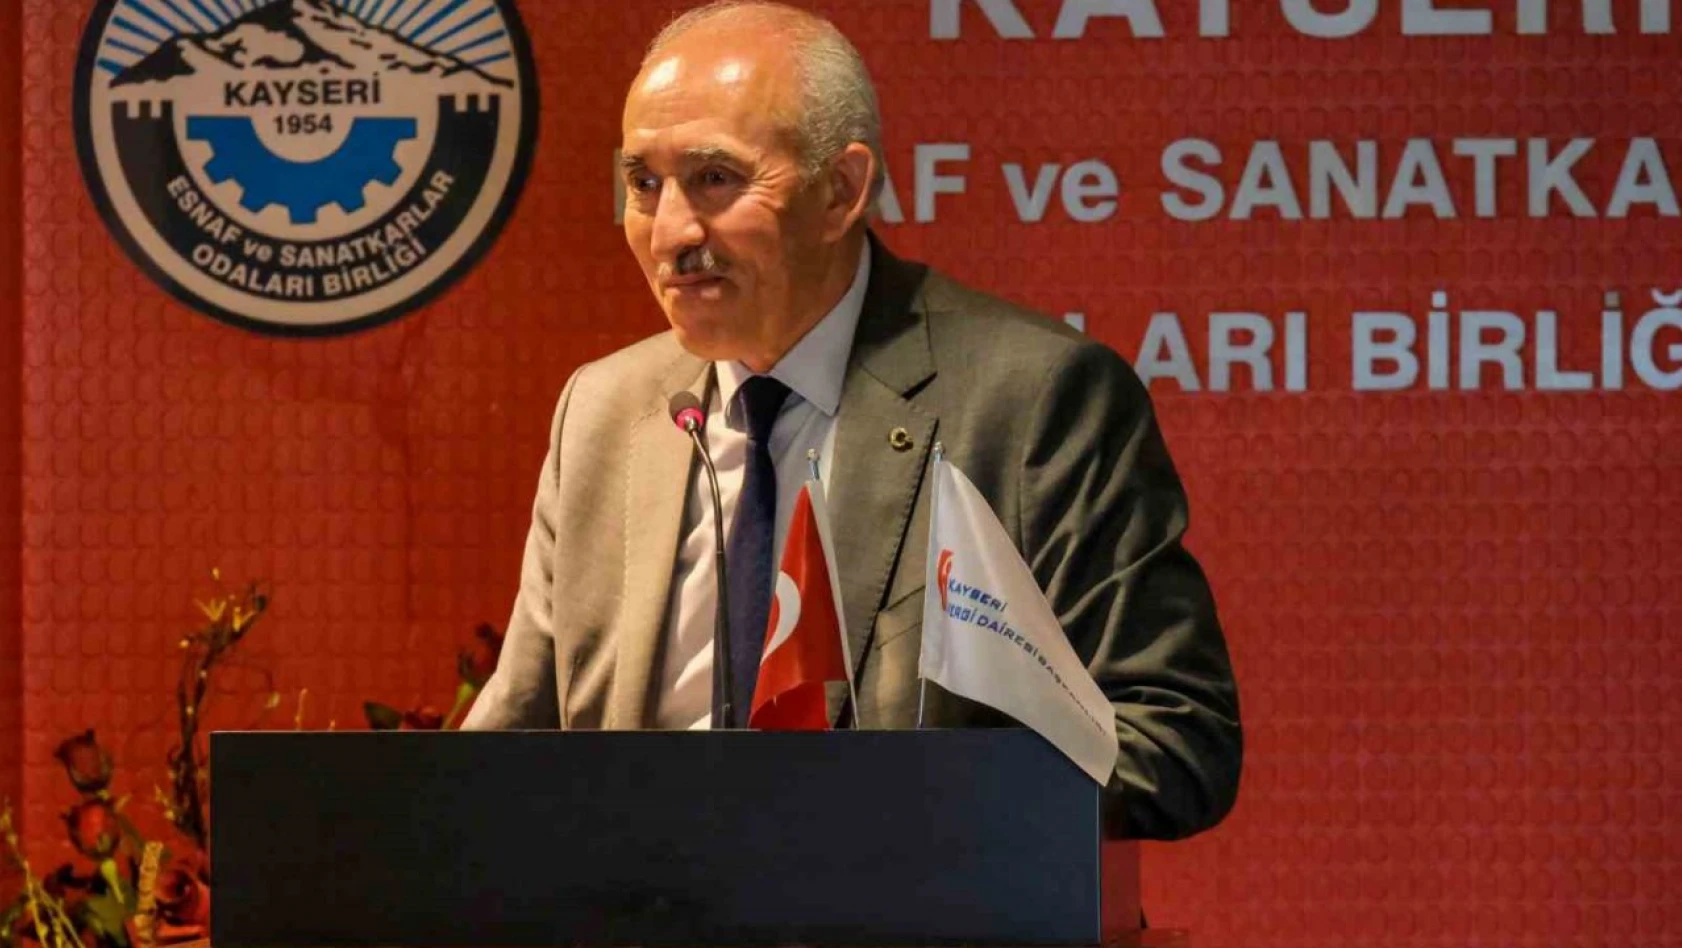 KESOB, Kayseri Vergi Dairesi Başkanı İbrahim Kaya'yı ağırladı